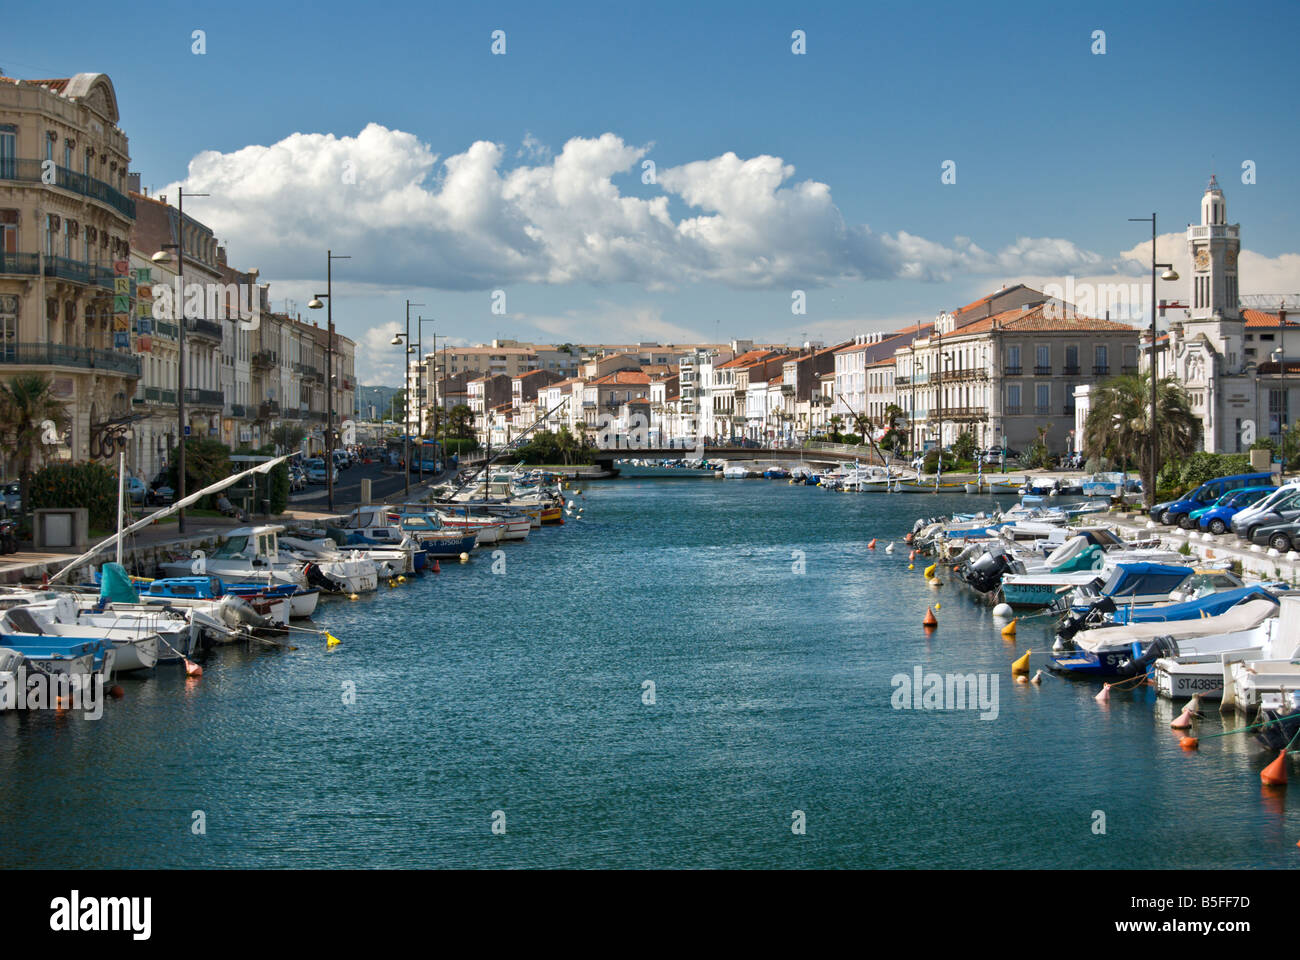 Segel- und Kreuzfahrtschiffe vor Anker am Quai De La Marine in Sete, Languedoc Roussillon, Frankreich. Stockfoto